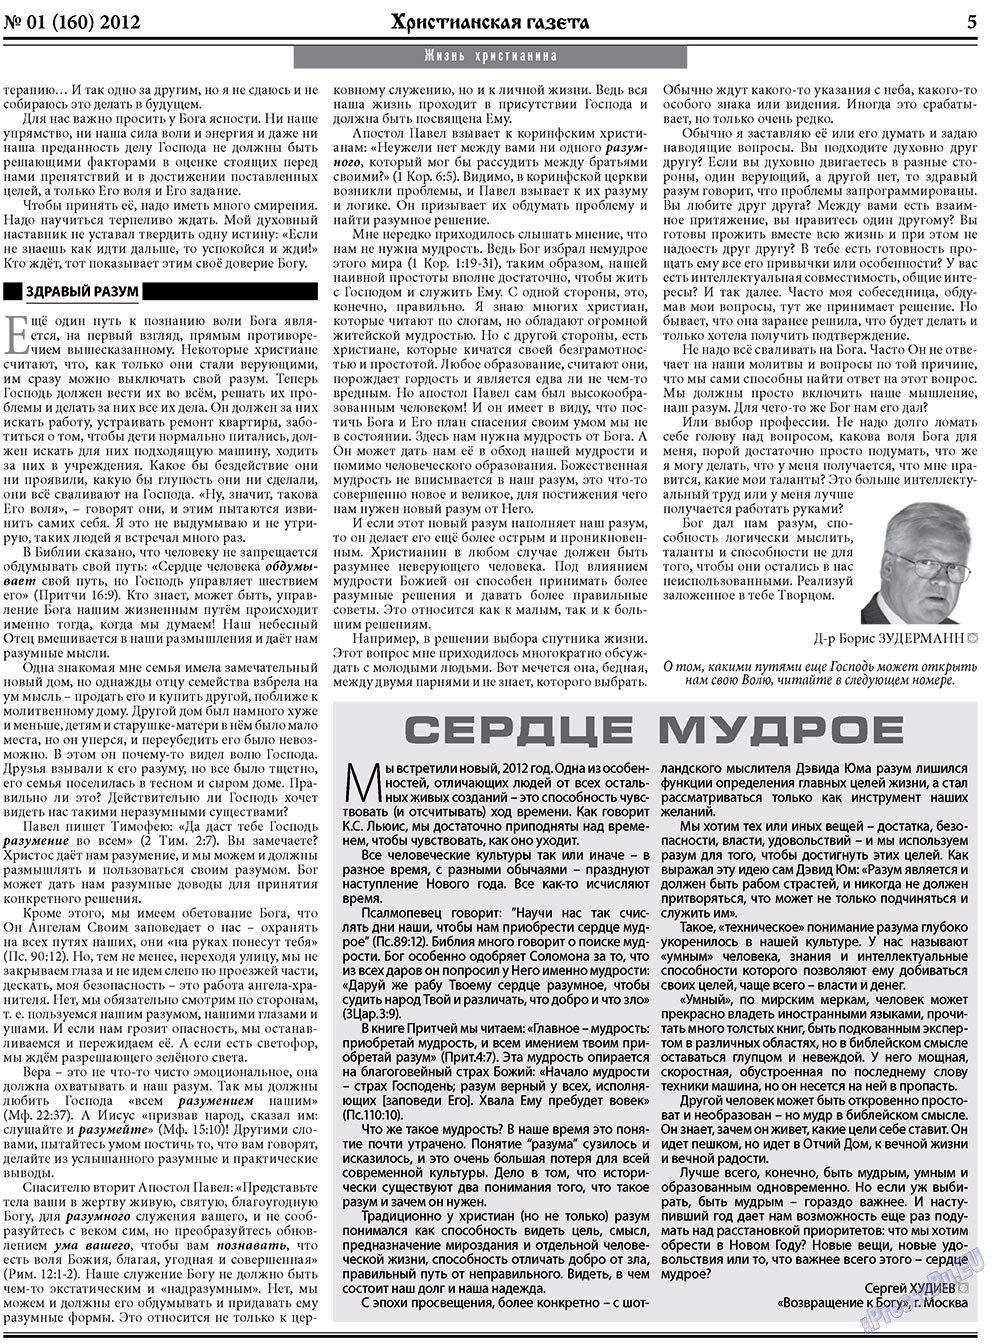 Христианская газета (газета). 2012 год, номер 1, стр. 5